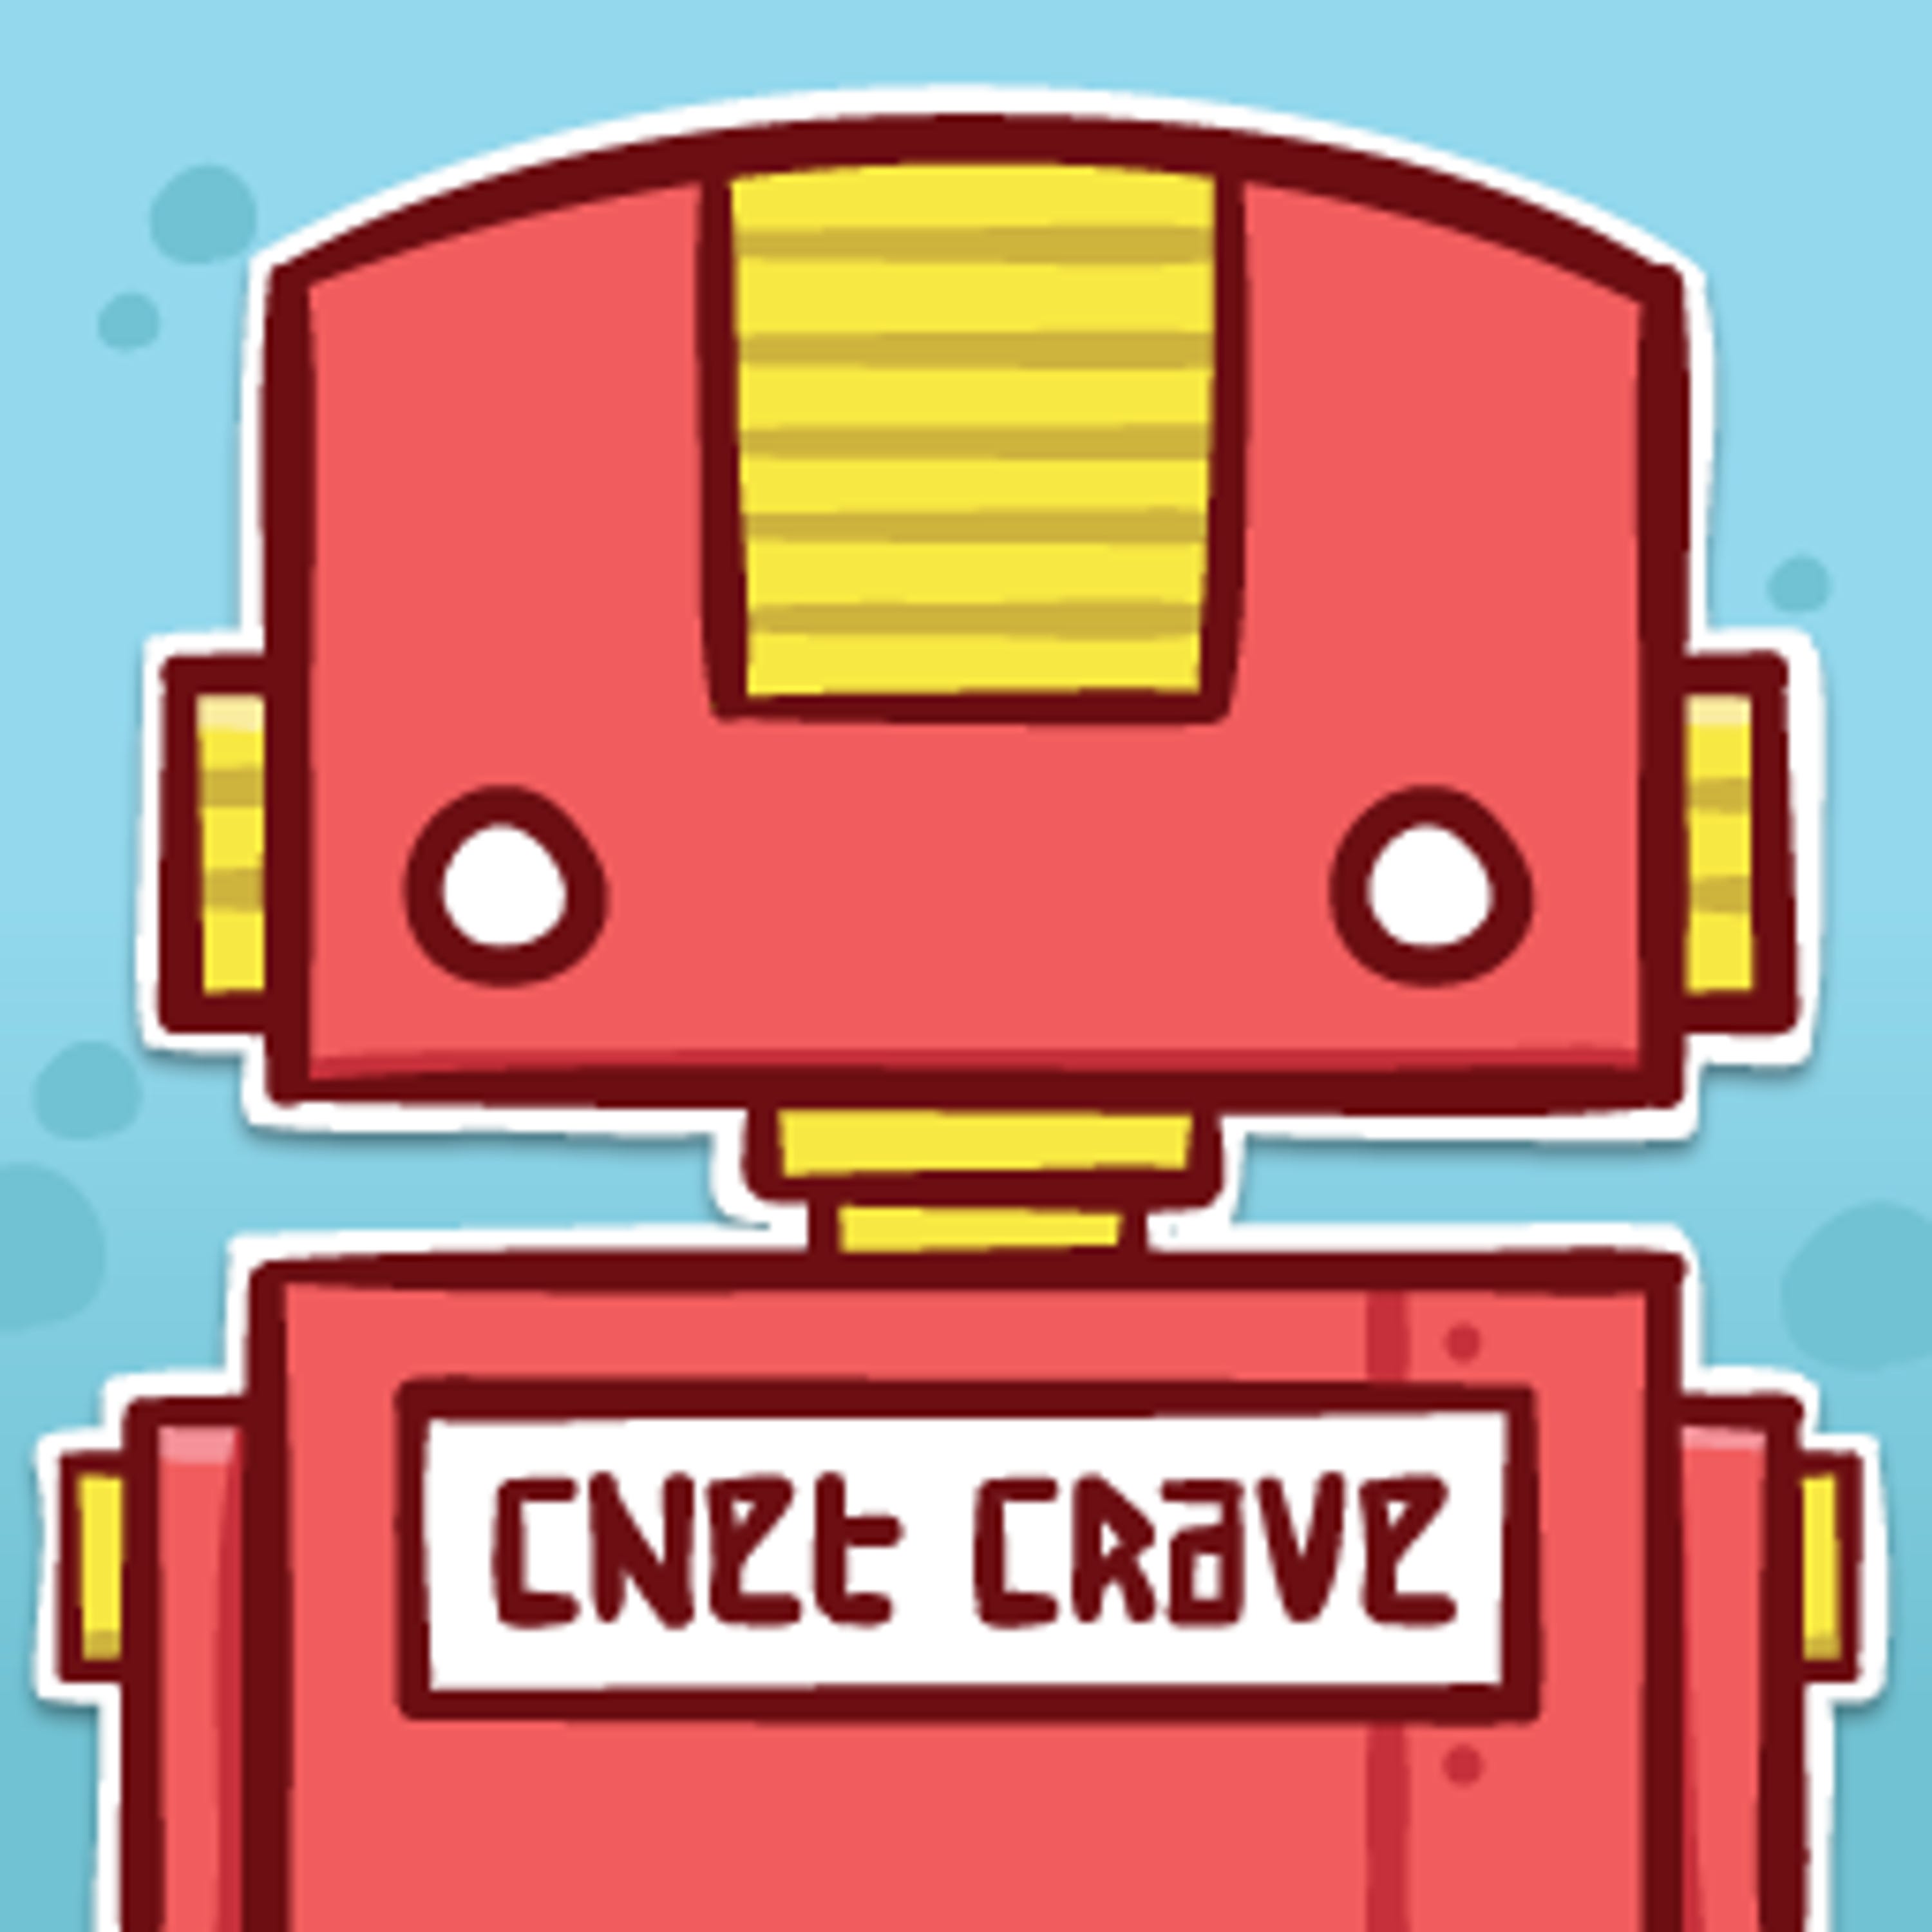 Crave (HQ)